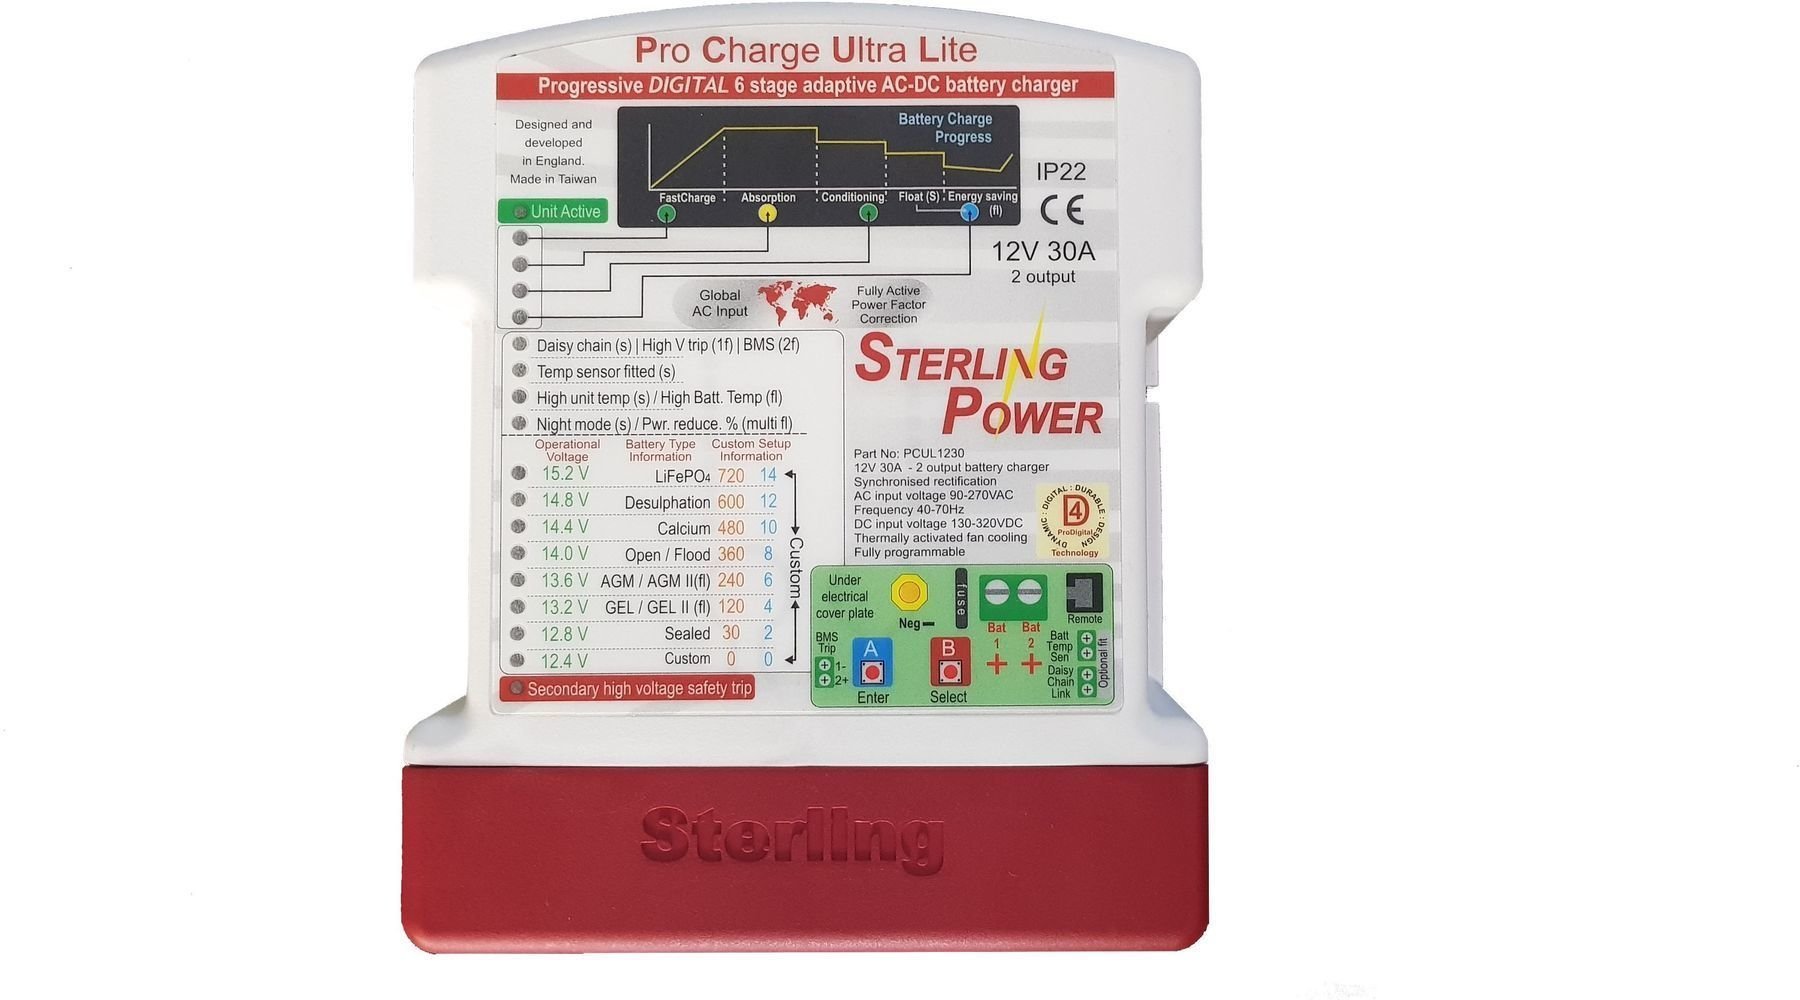 Carregador de baterias marítimas Sterling Power Pro Charge Ultra Lite